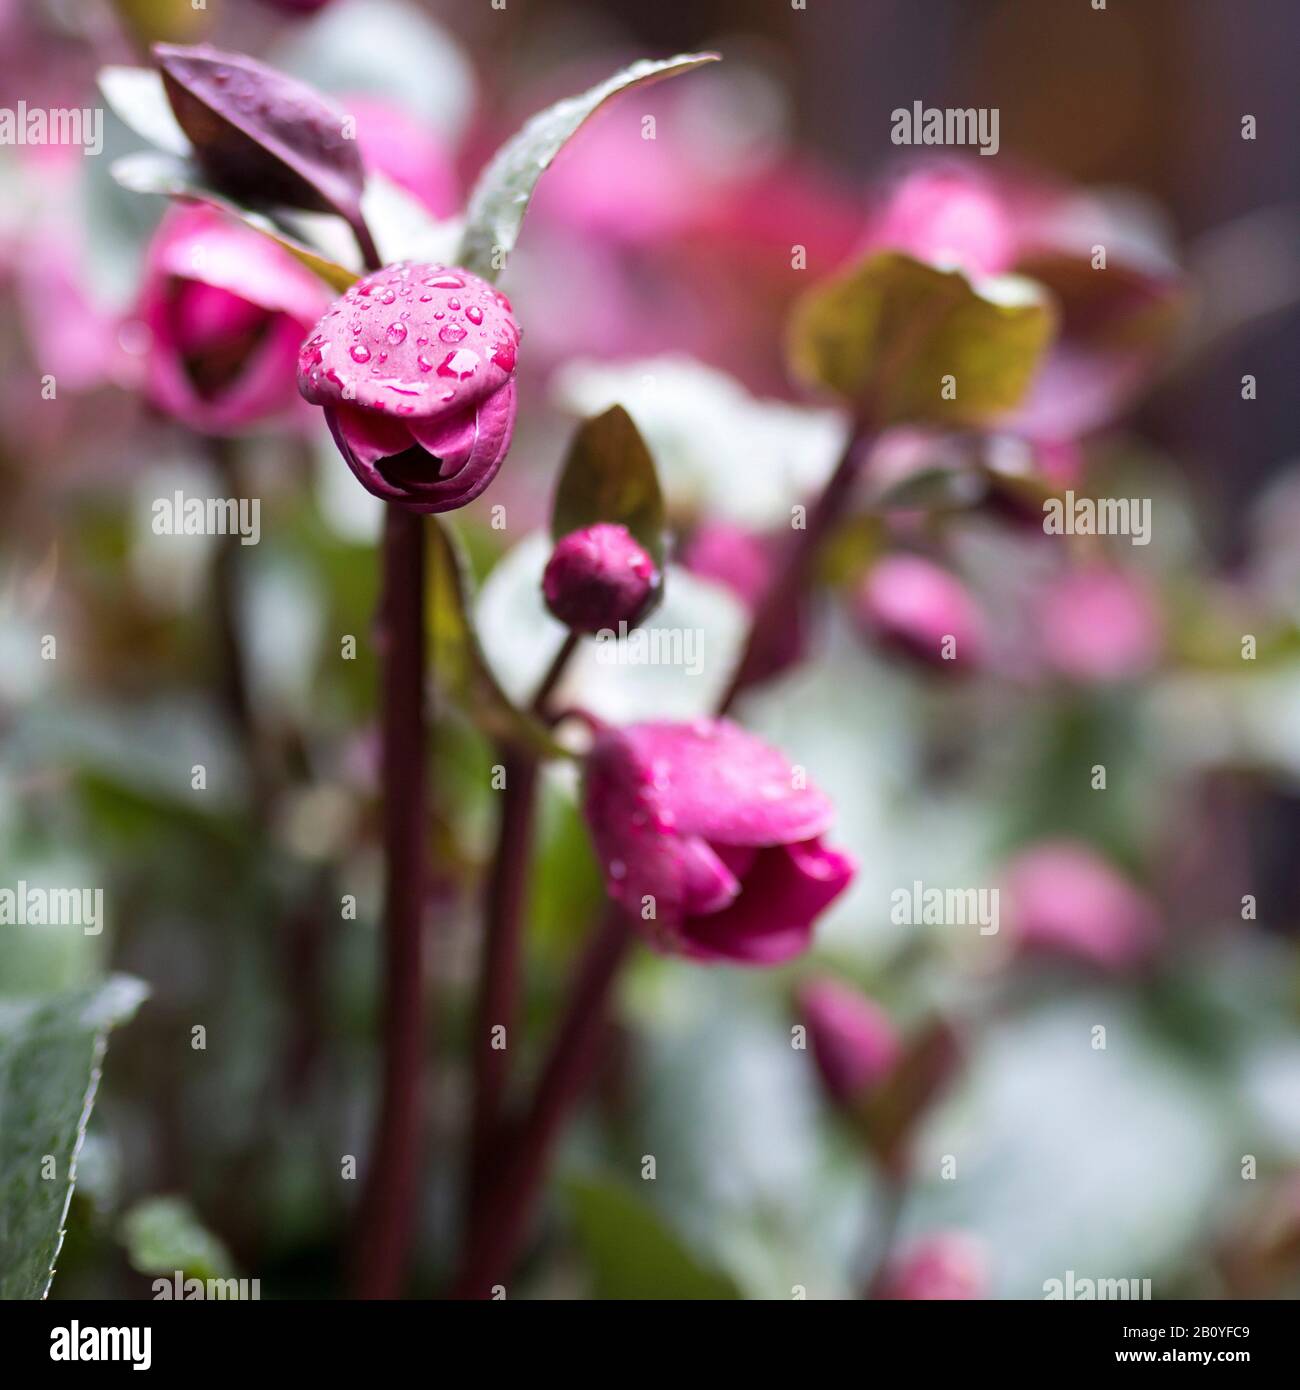 Stinking hellebore (Helleborus foetidus) in rain with raindrops Stock Photo